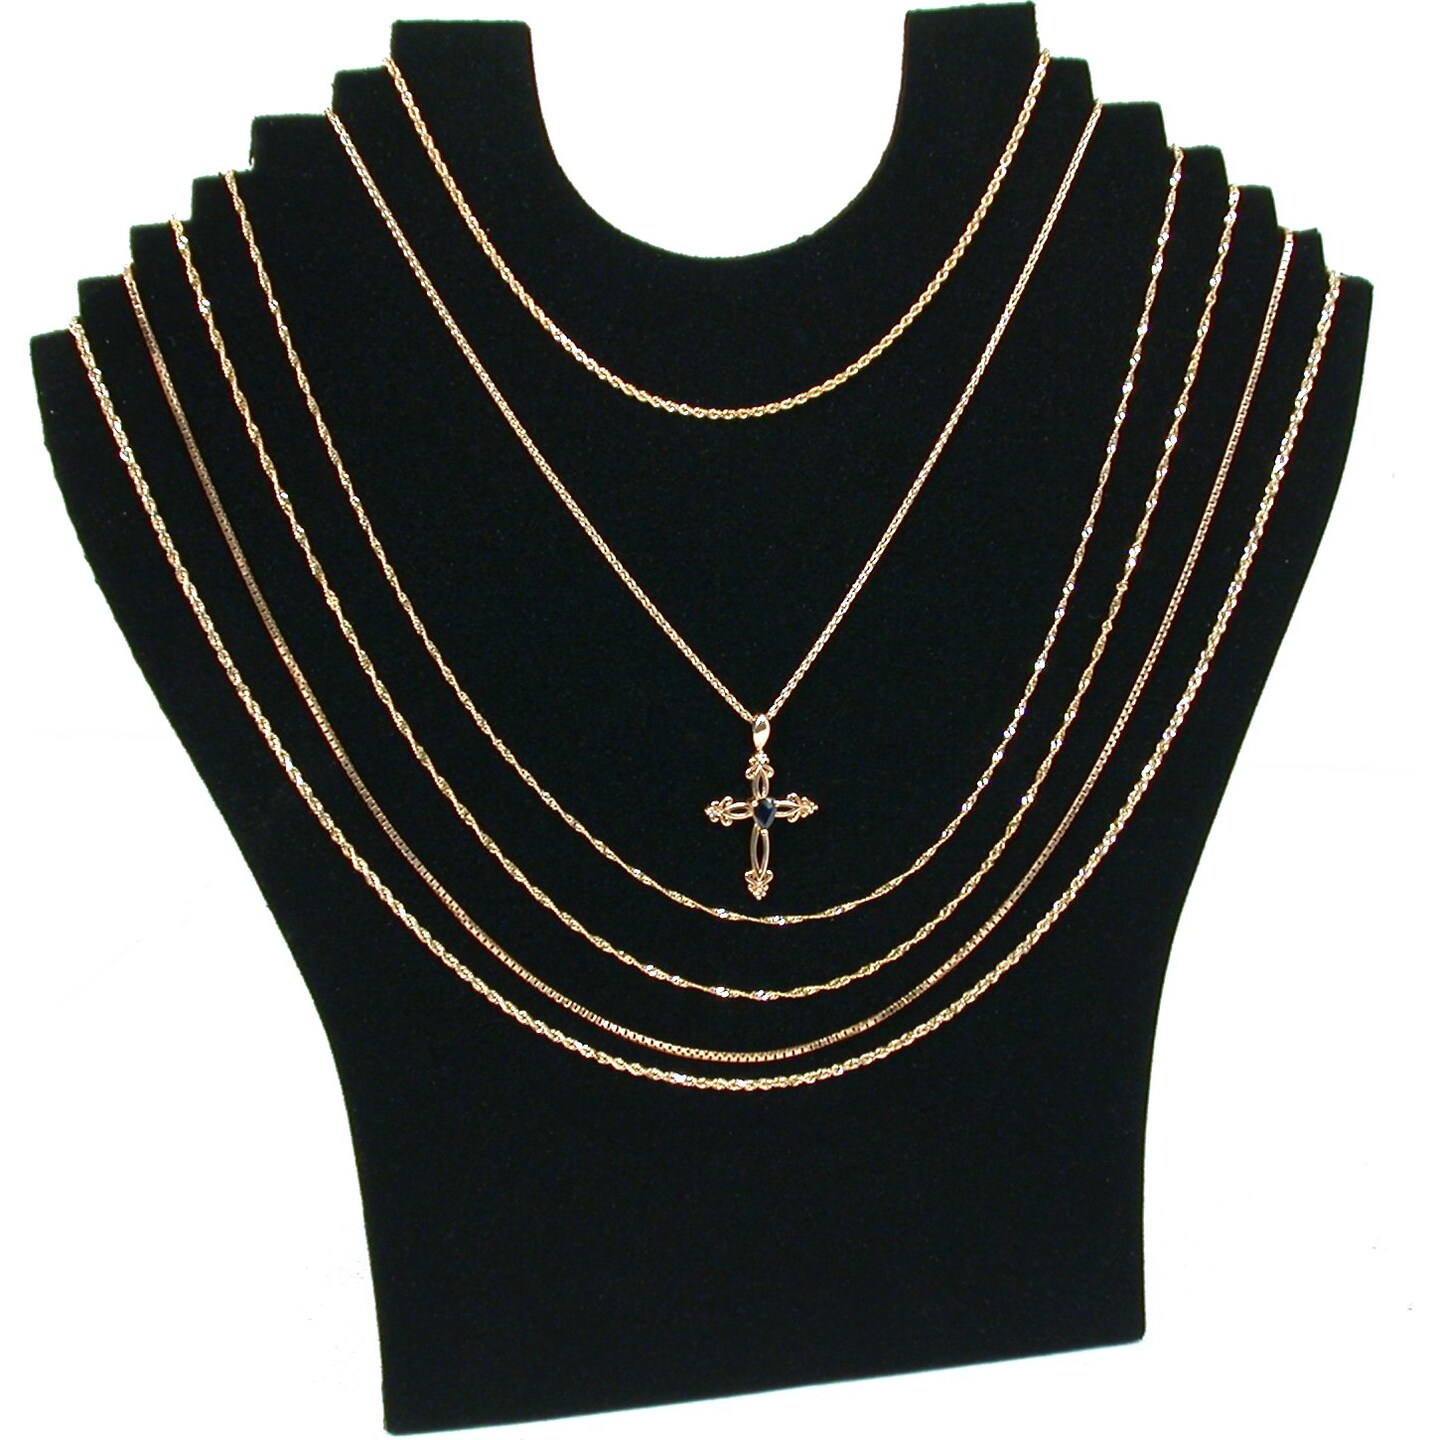 Necklace Black Velvet Jewelry Displays 14 Pc Set New